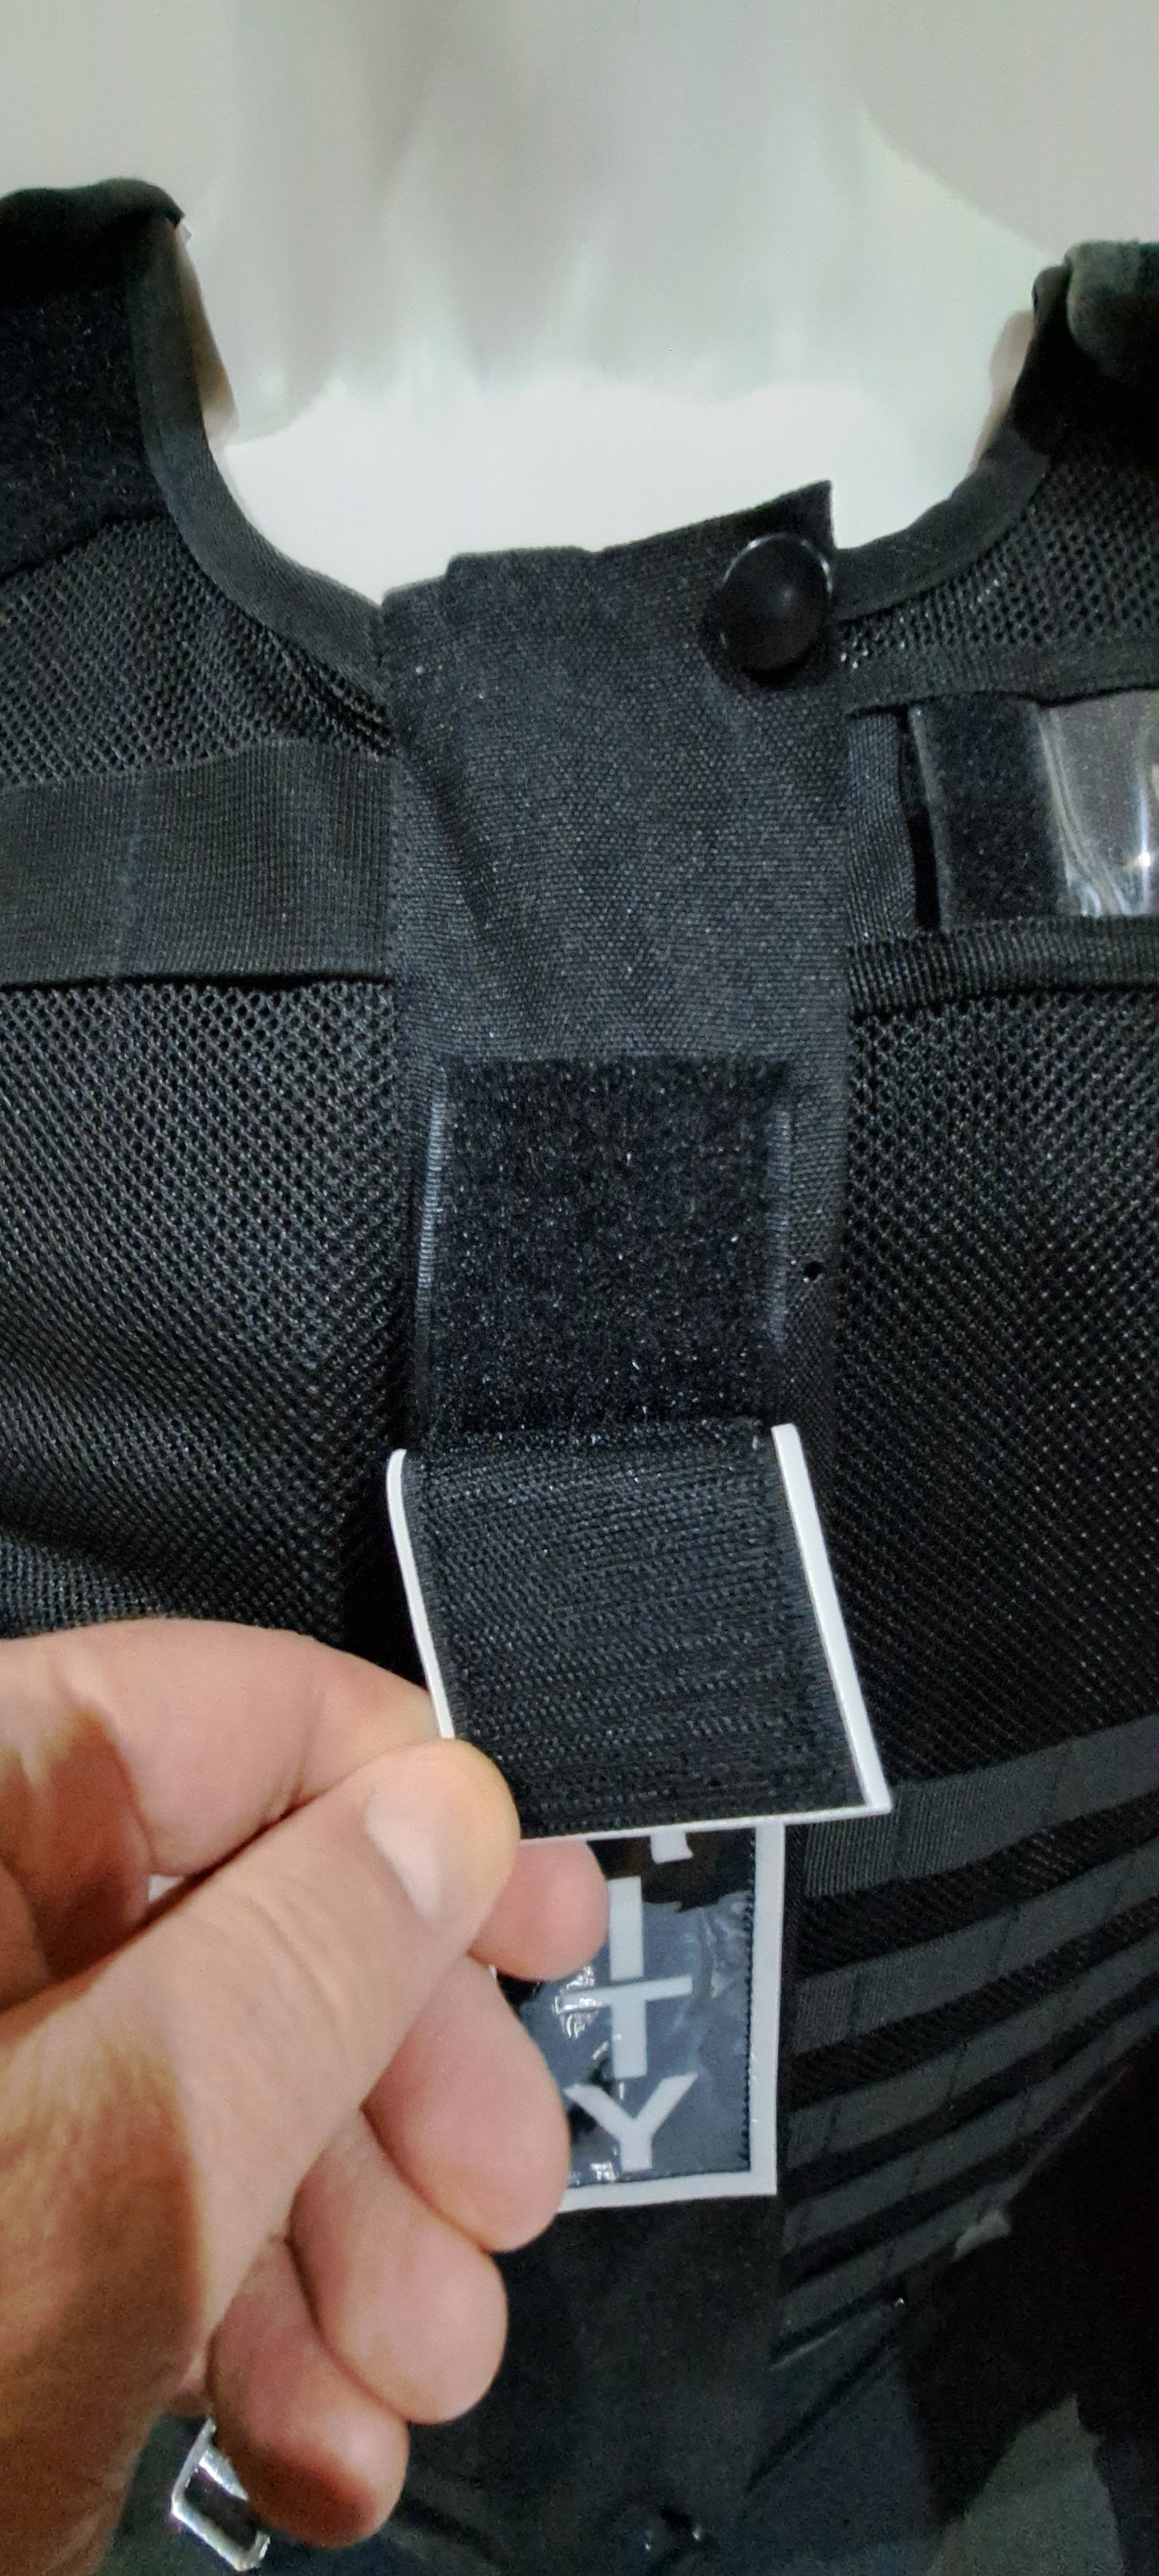 Responder Vest Security Badge Set